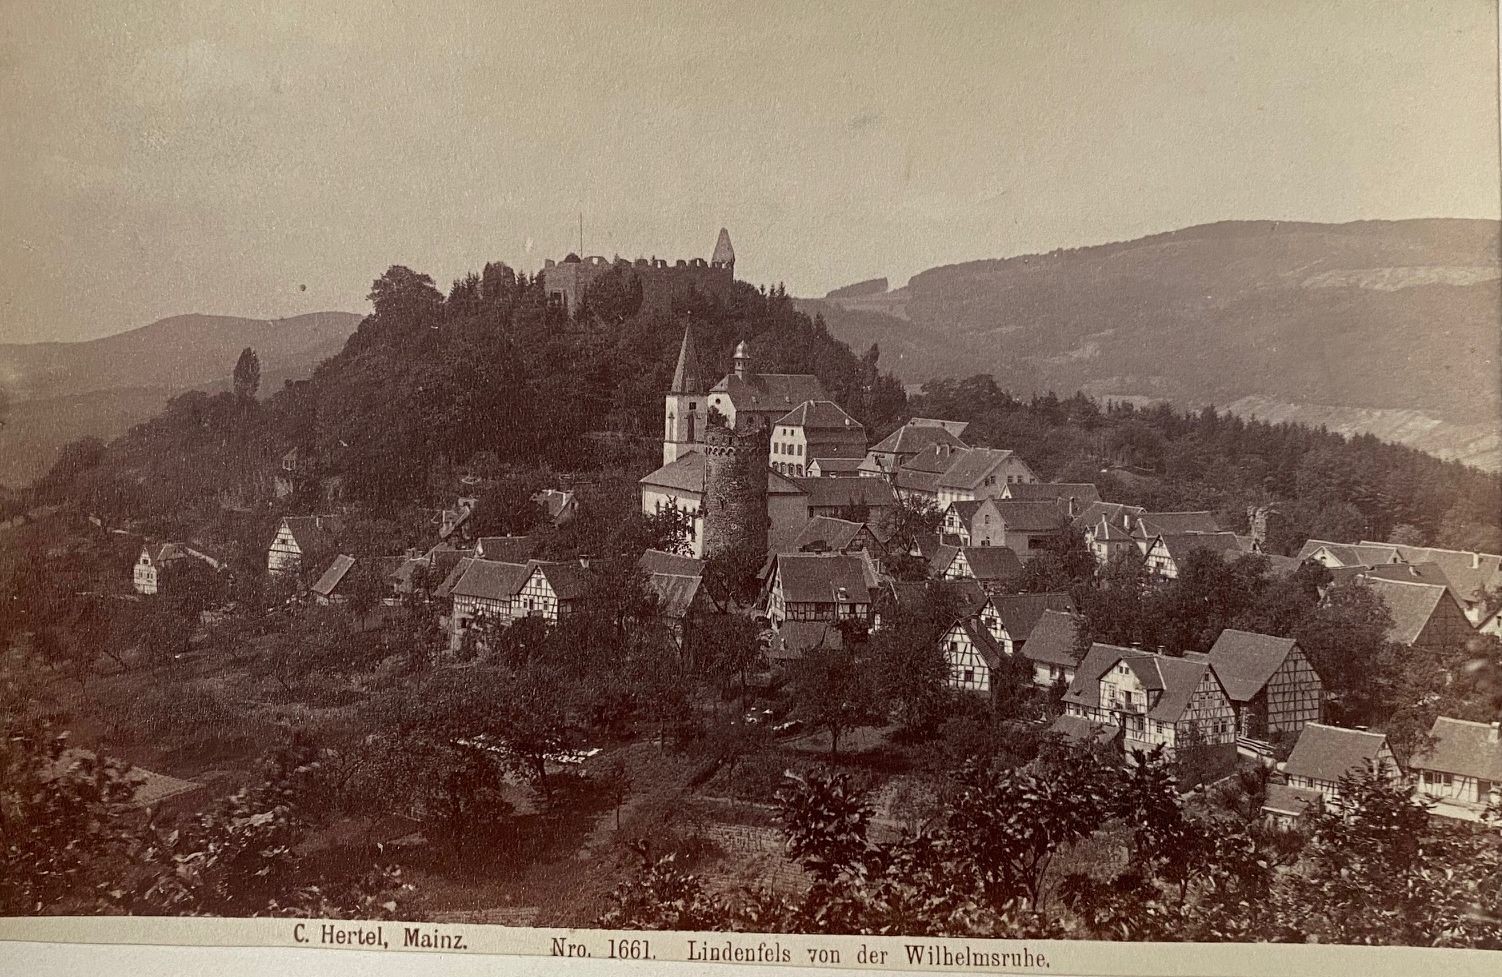 Fotografie, Carl Hertel No. 1661, Lindenfels von der Wilhelmsruhe, ca. 1885 (Taunus-Rhein-Main - Regionalgeschichtliche Sammlung Dr. Stefan Naas CC BY-NC-SA)